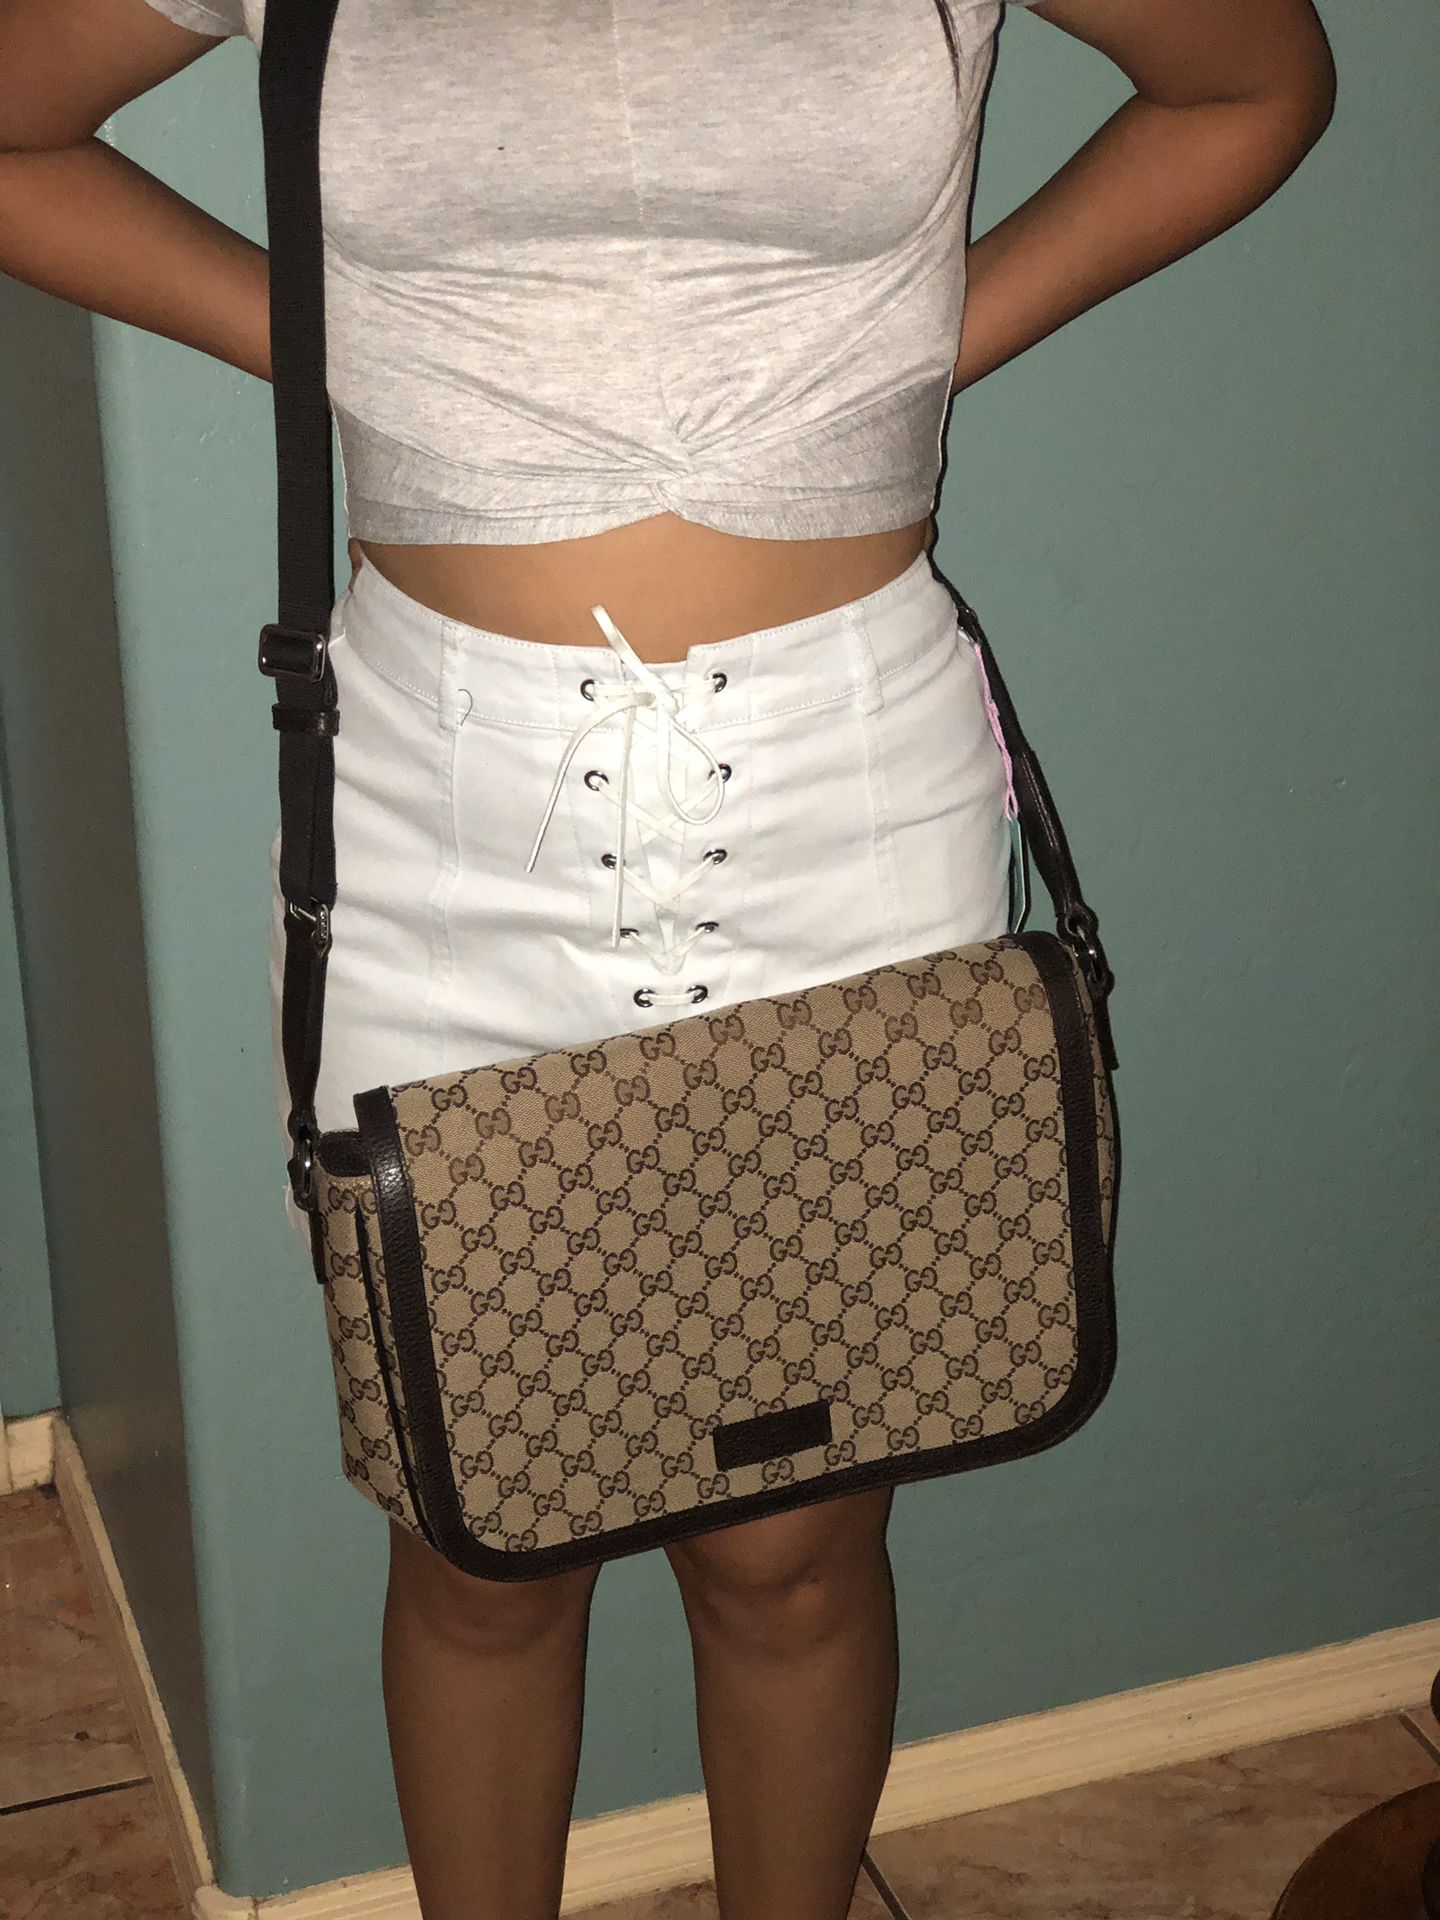 Authentic Gucci crossbody bag NO TRADES